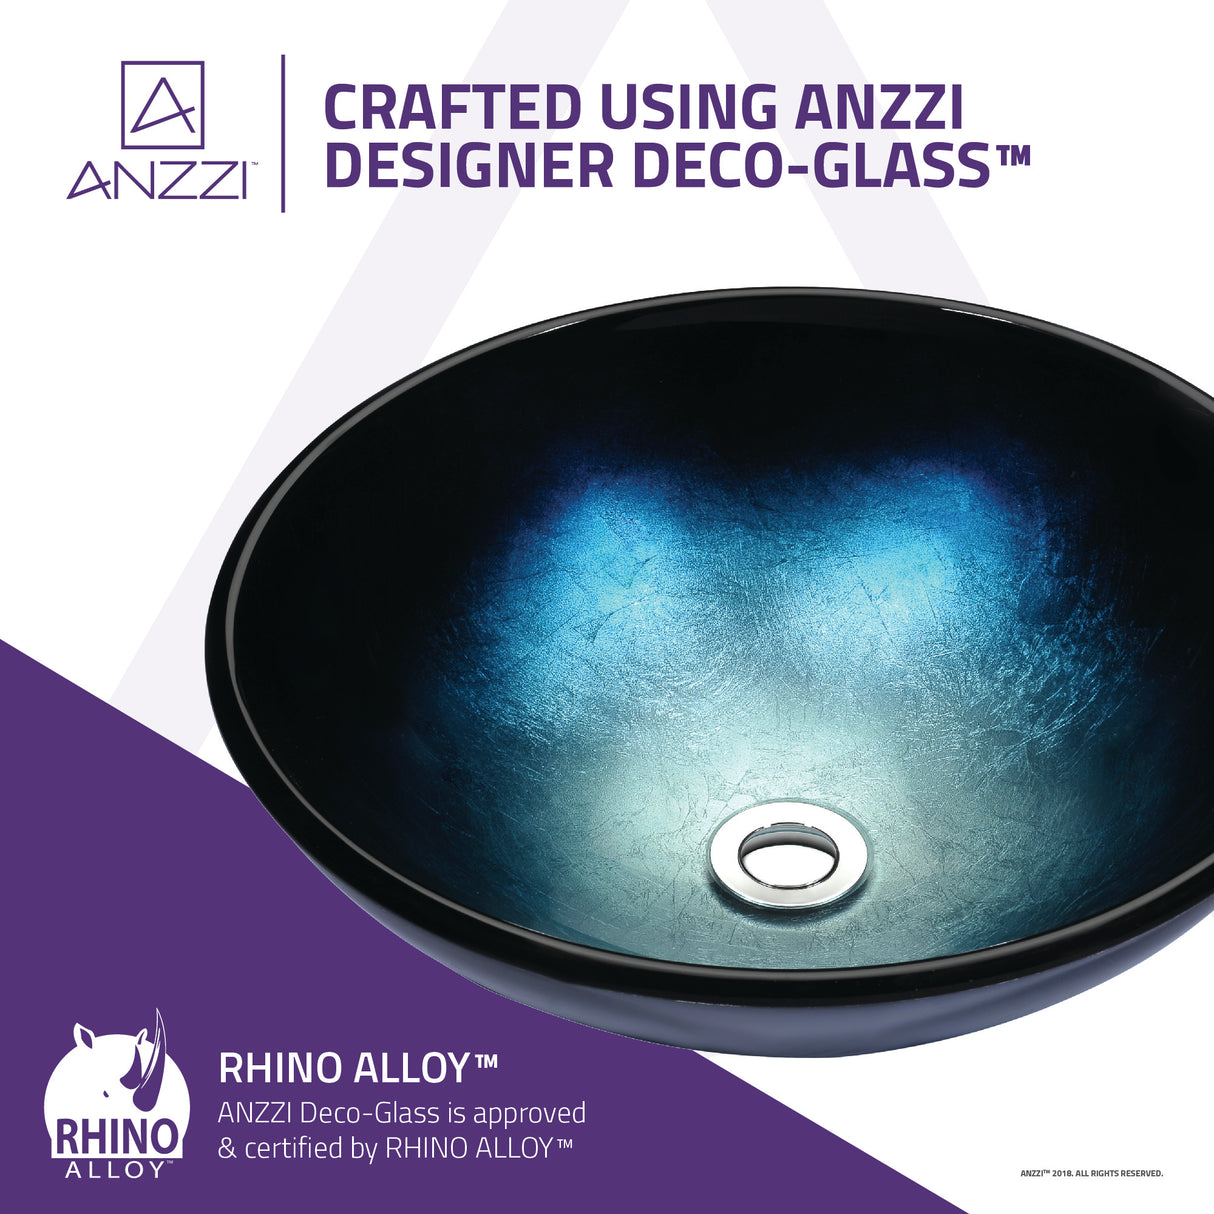 ANZZI LS-AZ8185 Tara Series Deco-Glass Vessel Sink in Deep Sea